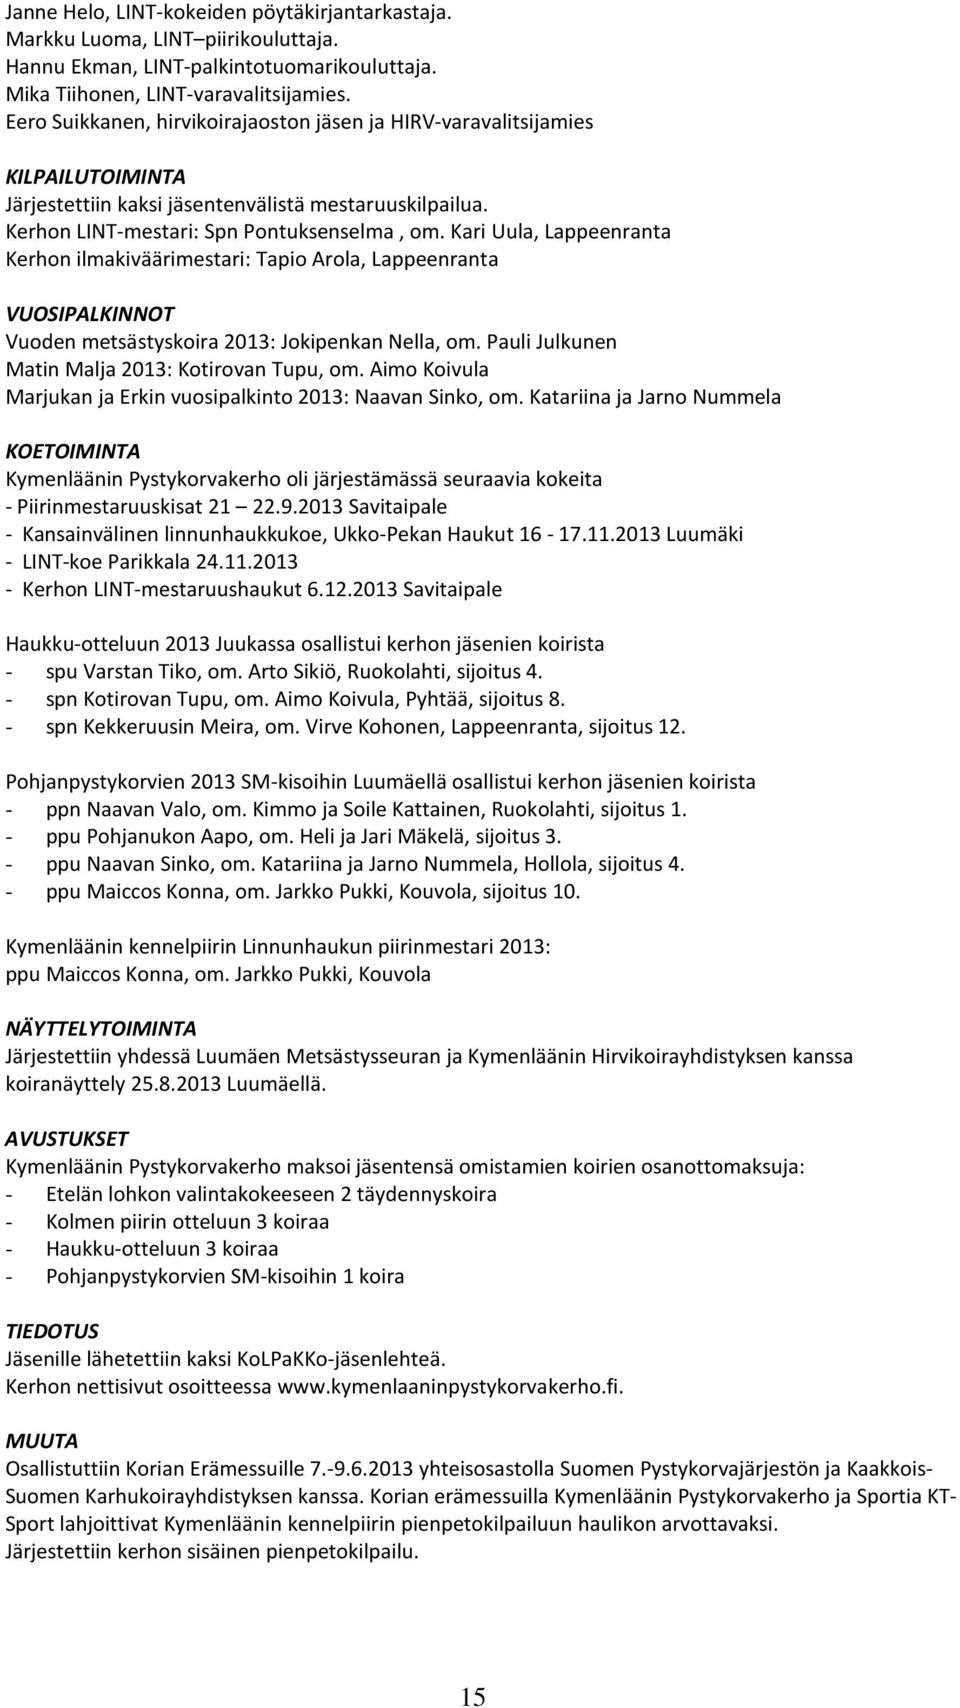 Kari Uula, Lappeenranta Kerhon ilmakiväärimestari: Tapio Arola, Lappeenranta VUOSIPALKINNOT Vuoden metsästyskoira 2013: Jokipenkan Nella, om. Pauli Julkunen Matin Malja 2013: Kotirovan Tupu, om.